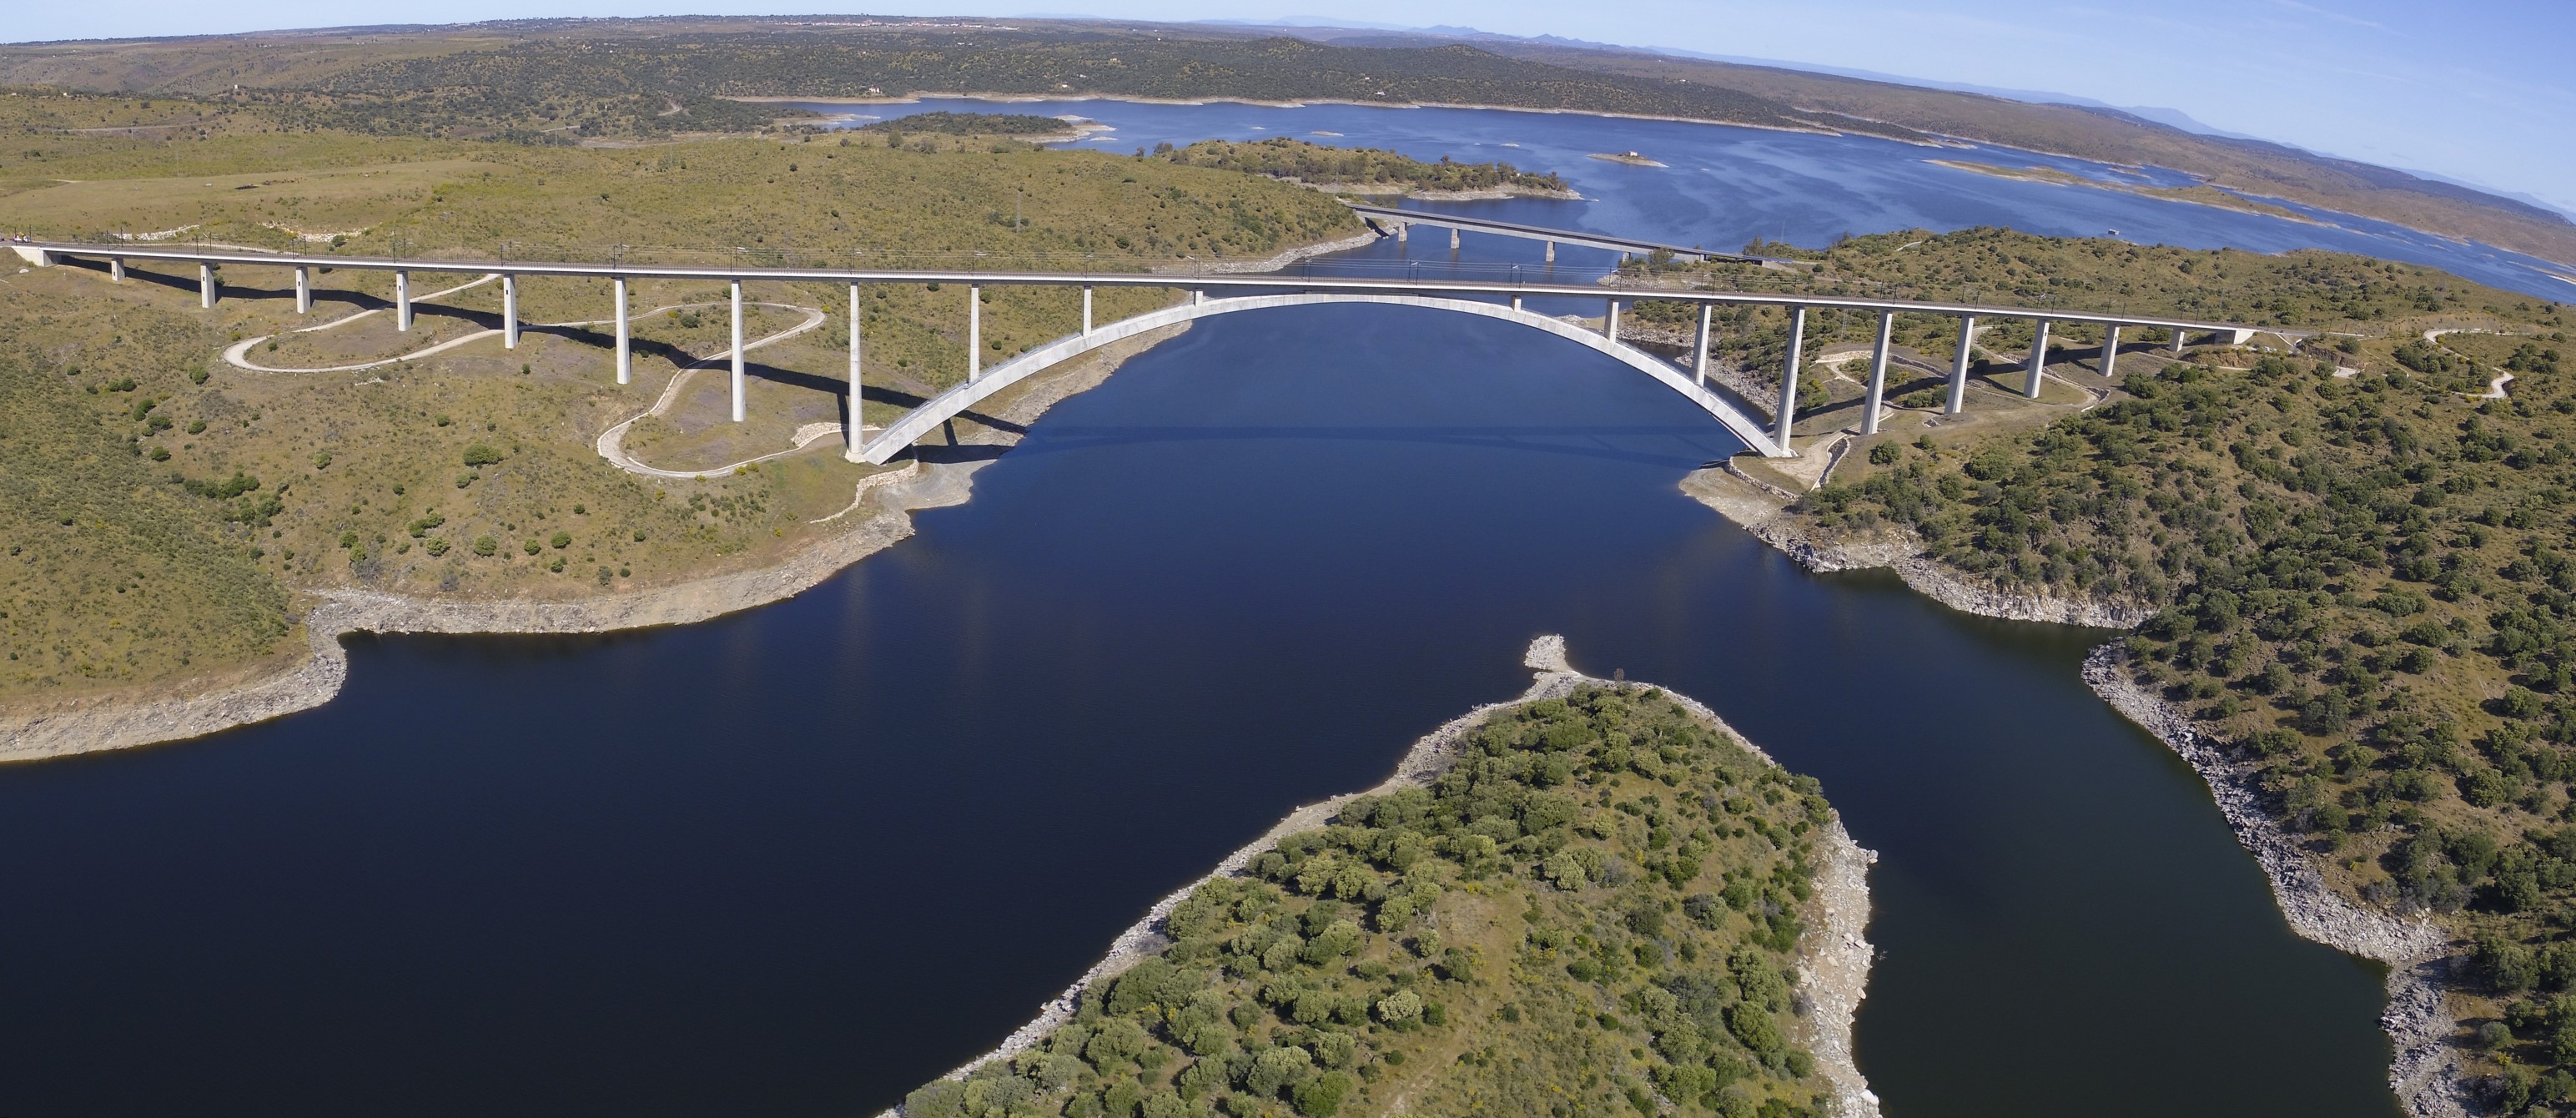 LAV Extremadura. Viaducto de Almonte. Pnorámica desde dron.